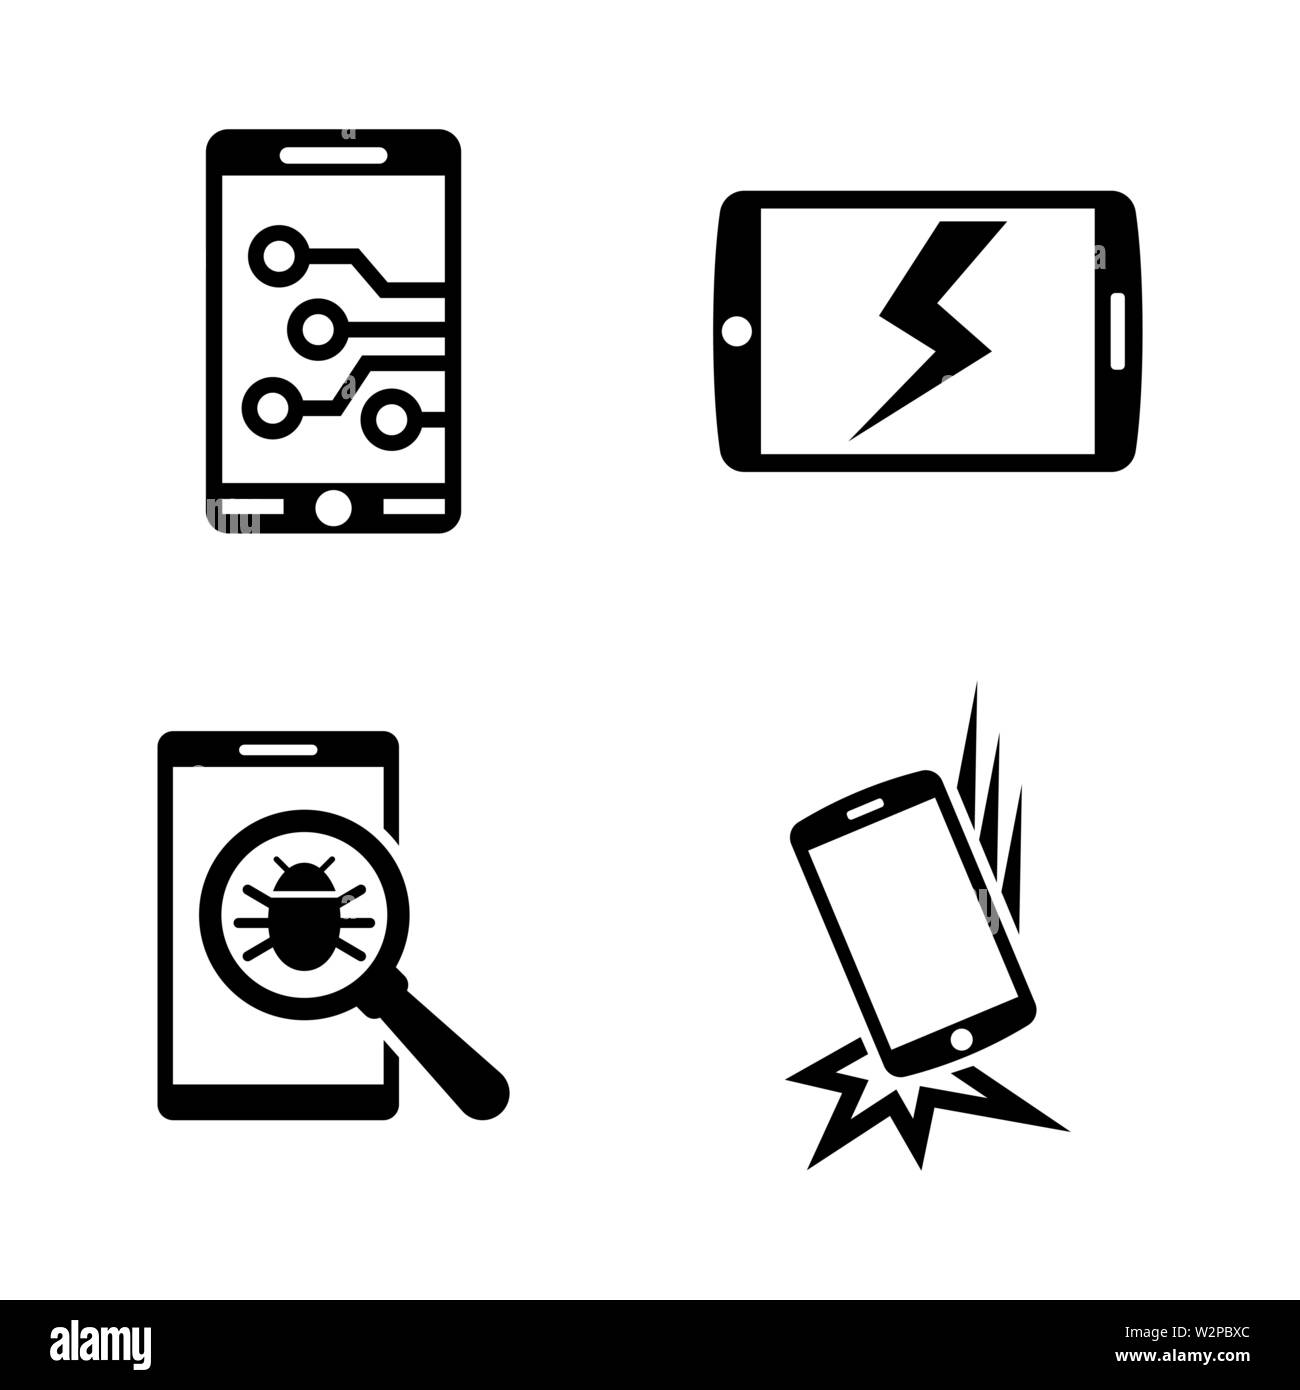 Gebrochen-Smartphone. Einfache ergänzende Vector Icons Set für Video, Mobile Anwendungen, Websites, Print Projekte und ihre Gestaltung. Schwarz auf Weiß Stock Vektor